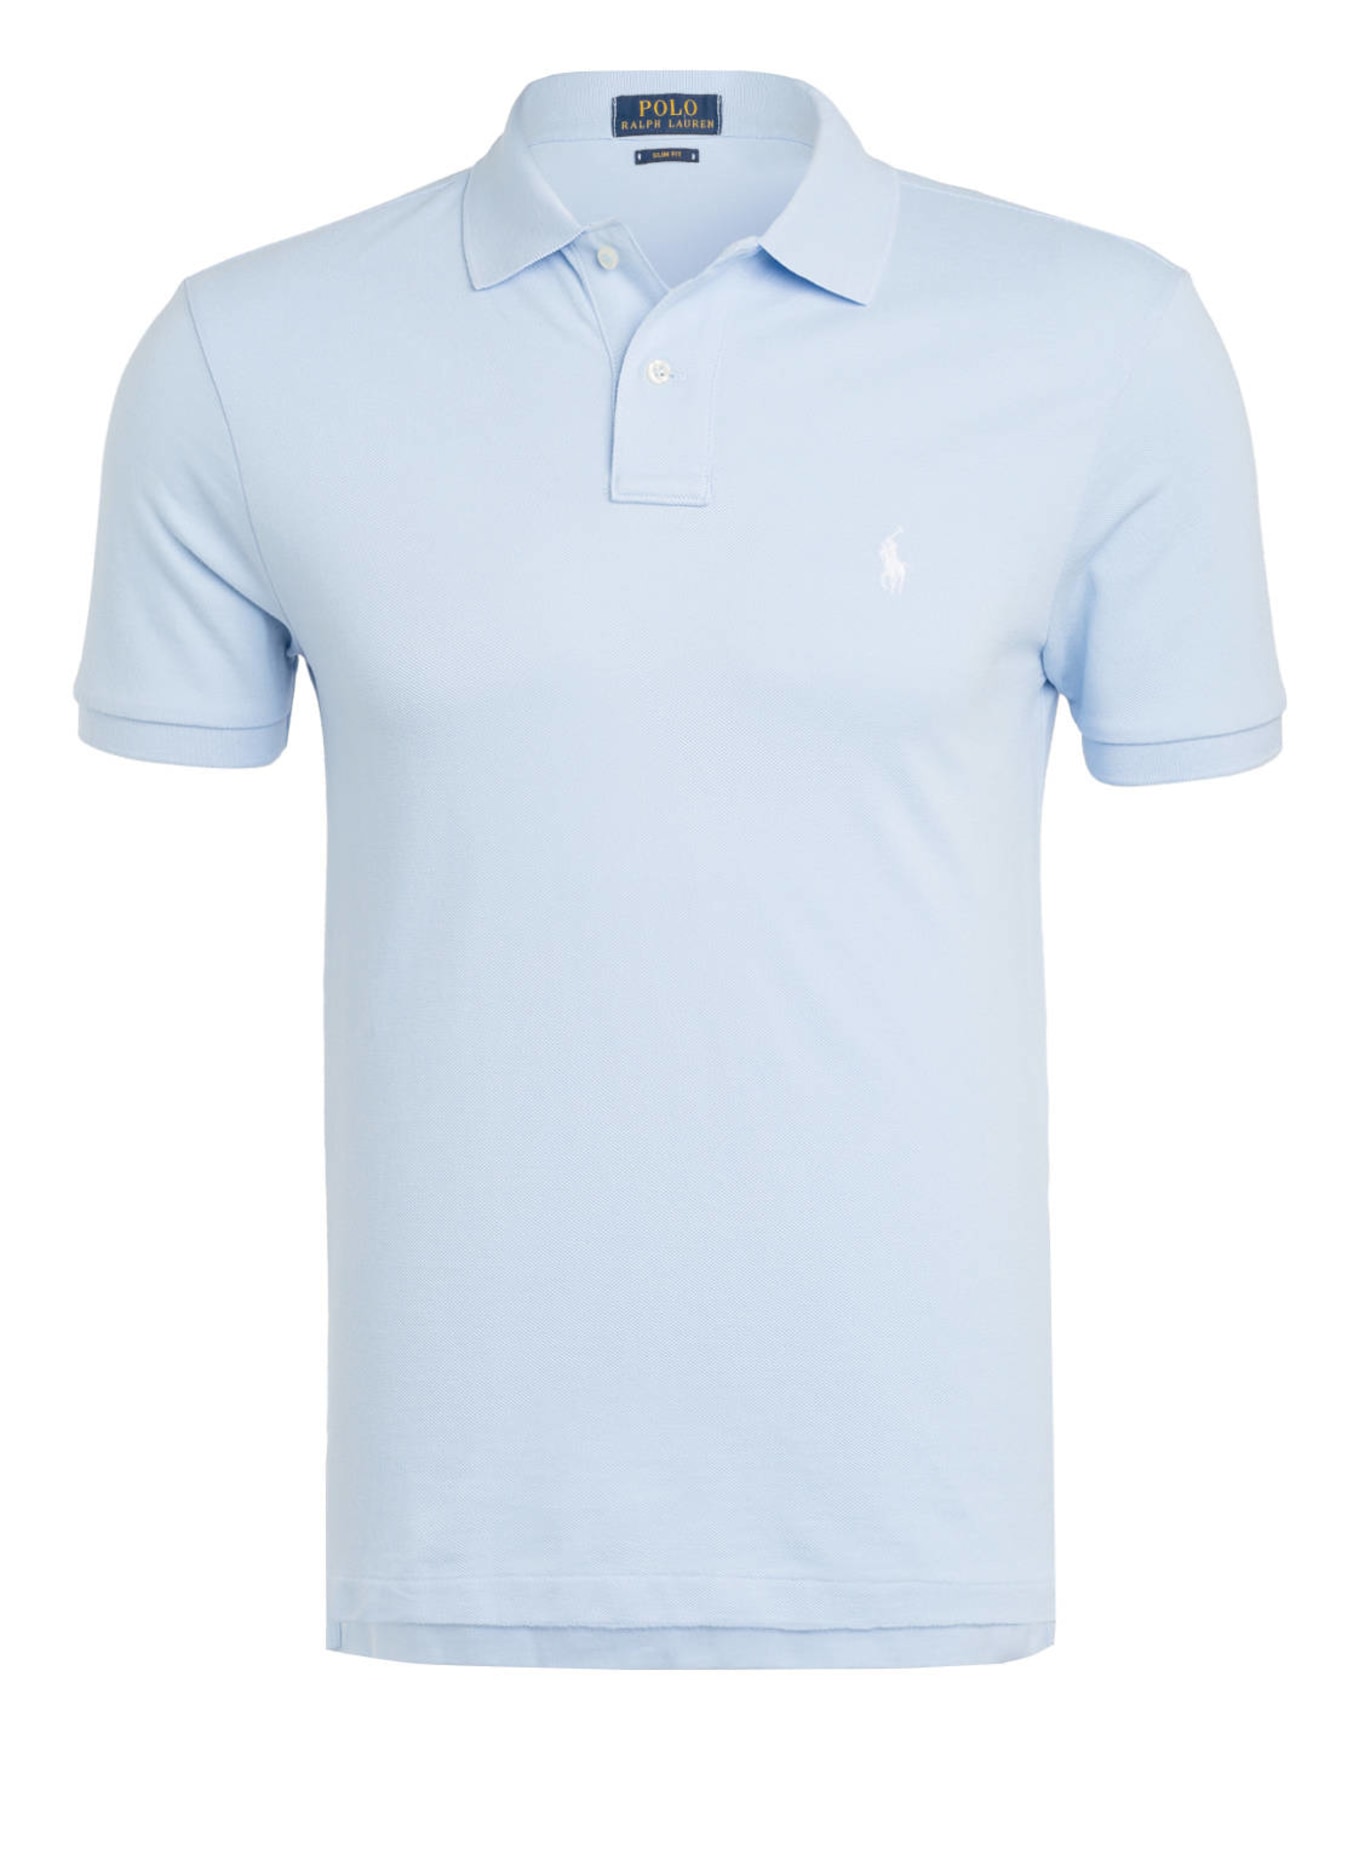 POLO RALPH LAUREN Piqué-Poloshirt Slim Fit, Farbe: HELLBLAU (Bild 1)